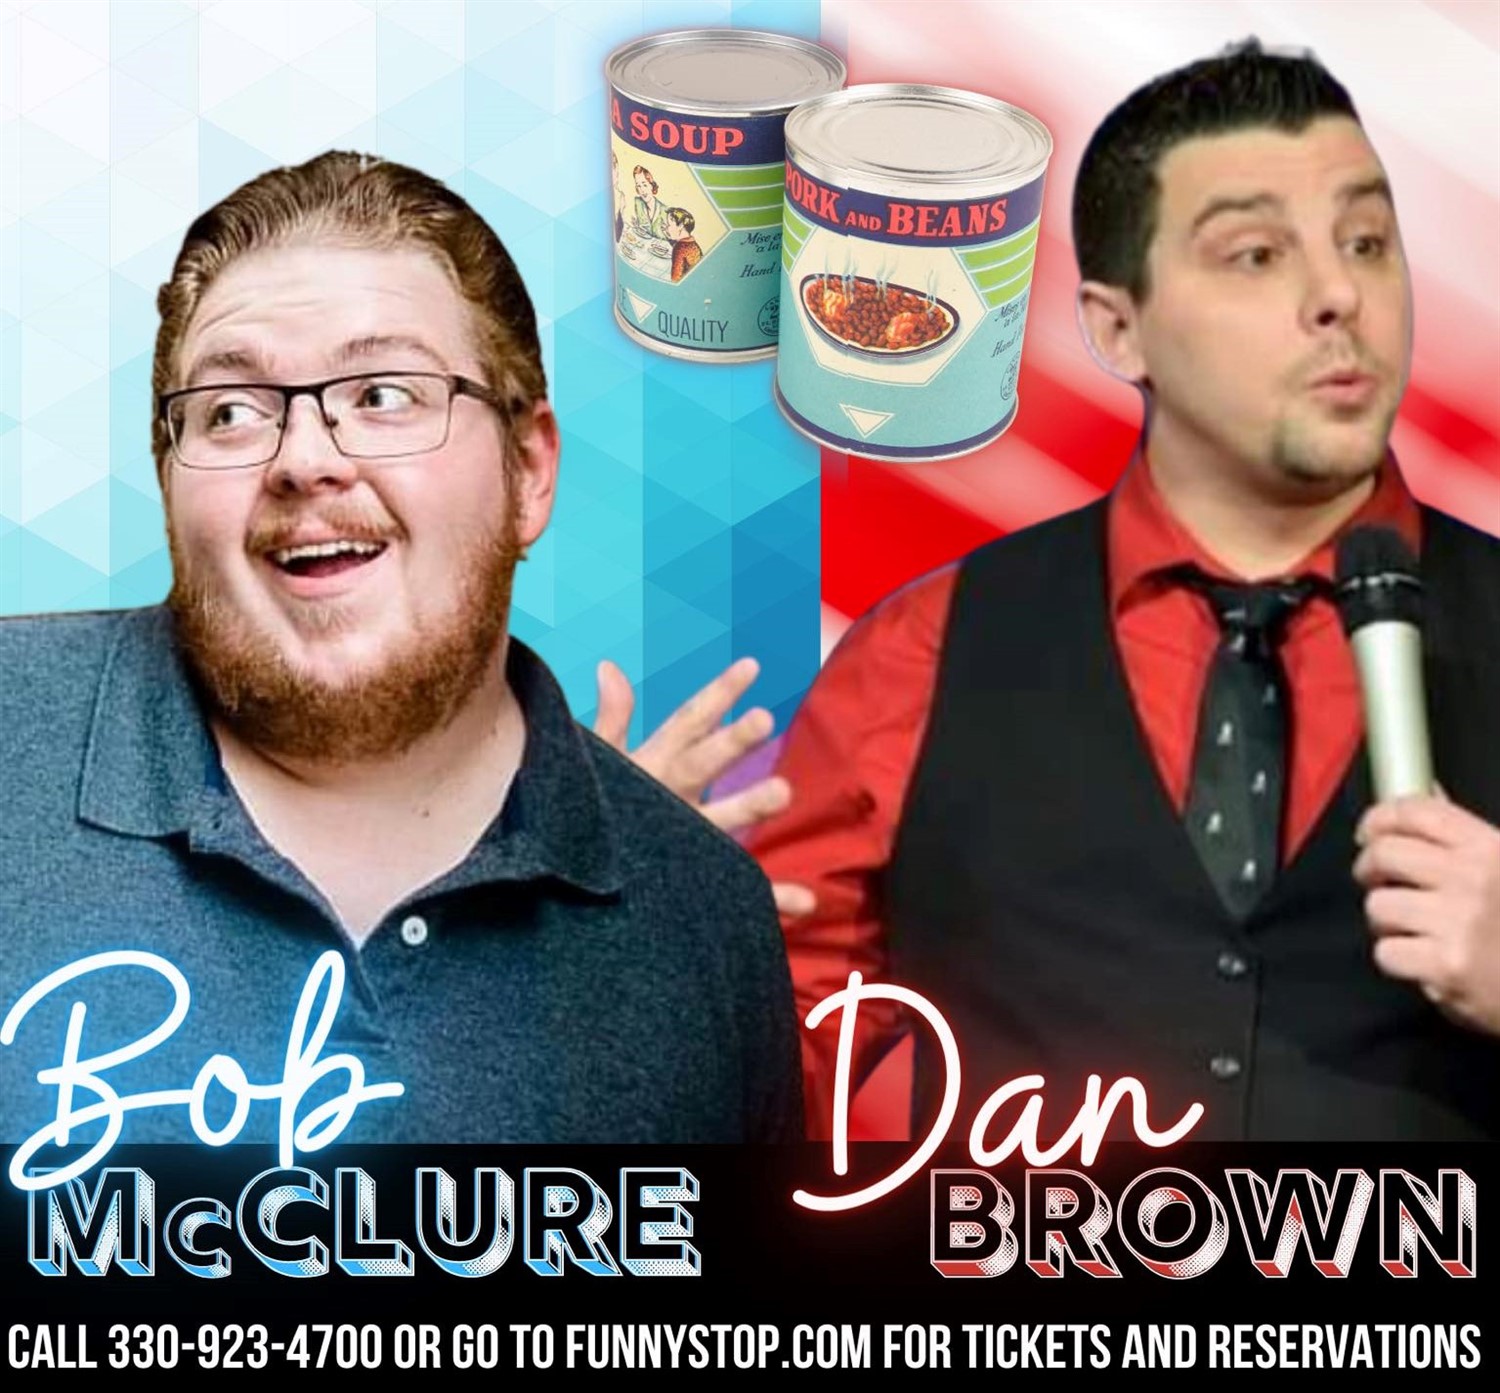 Bob McClure and Dan Brown 7:20pm show Funny Stop Comedy Club on dic. 17, 19:20@Funny Stop Comedy Club - Compra entradas y obtén información enFunny Stop funnystop.online